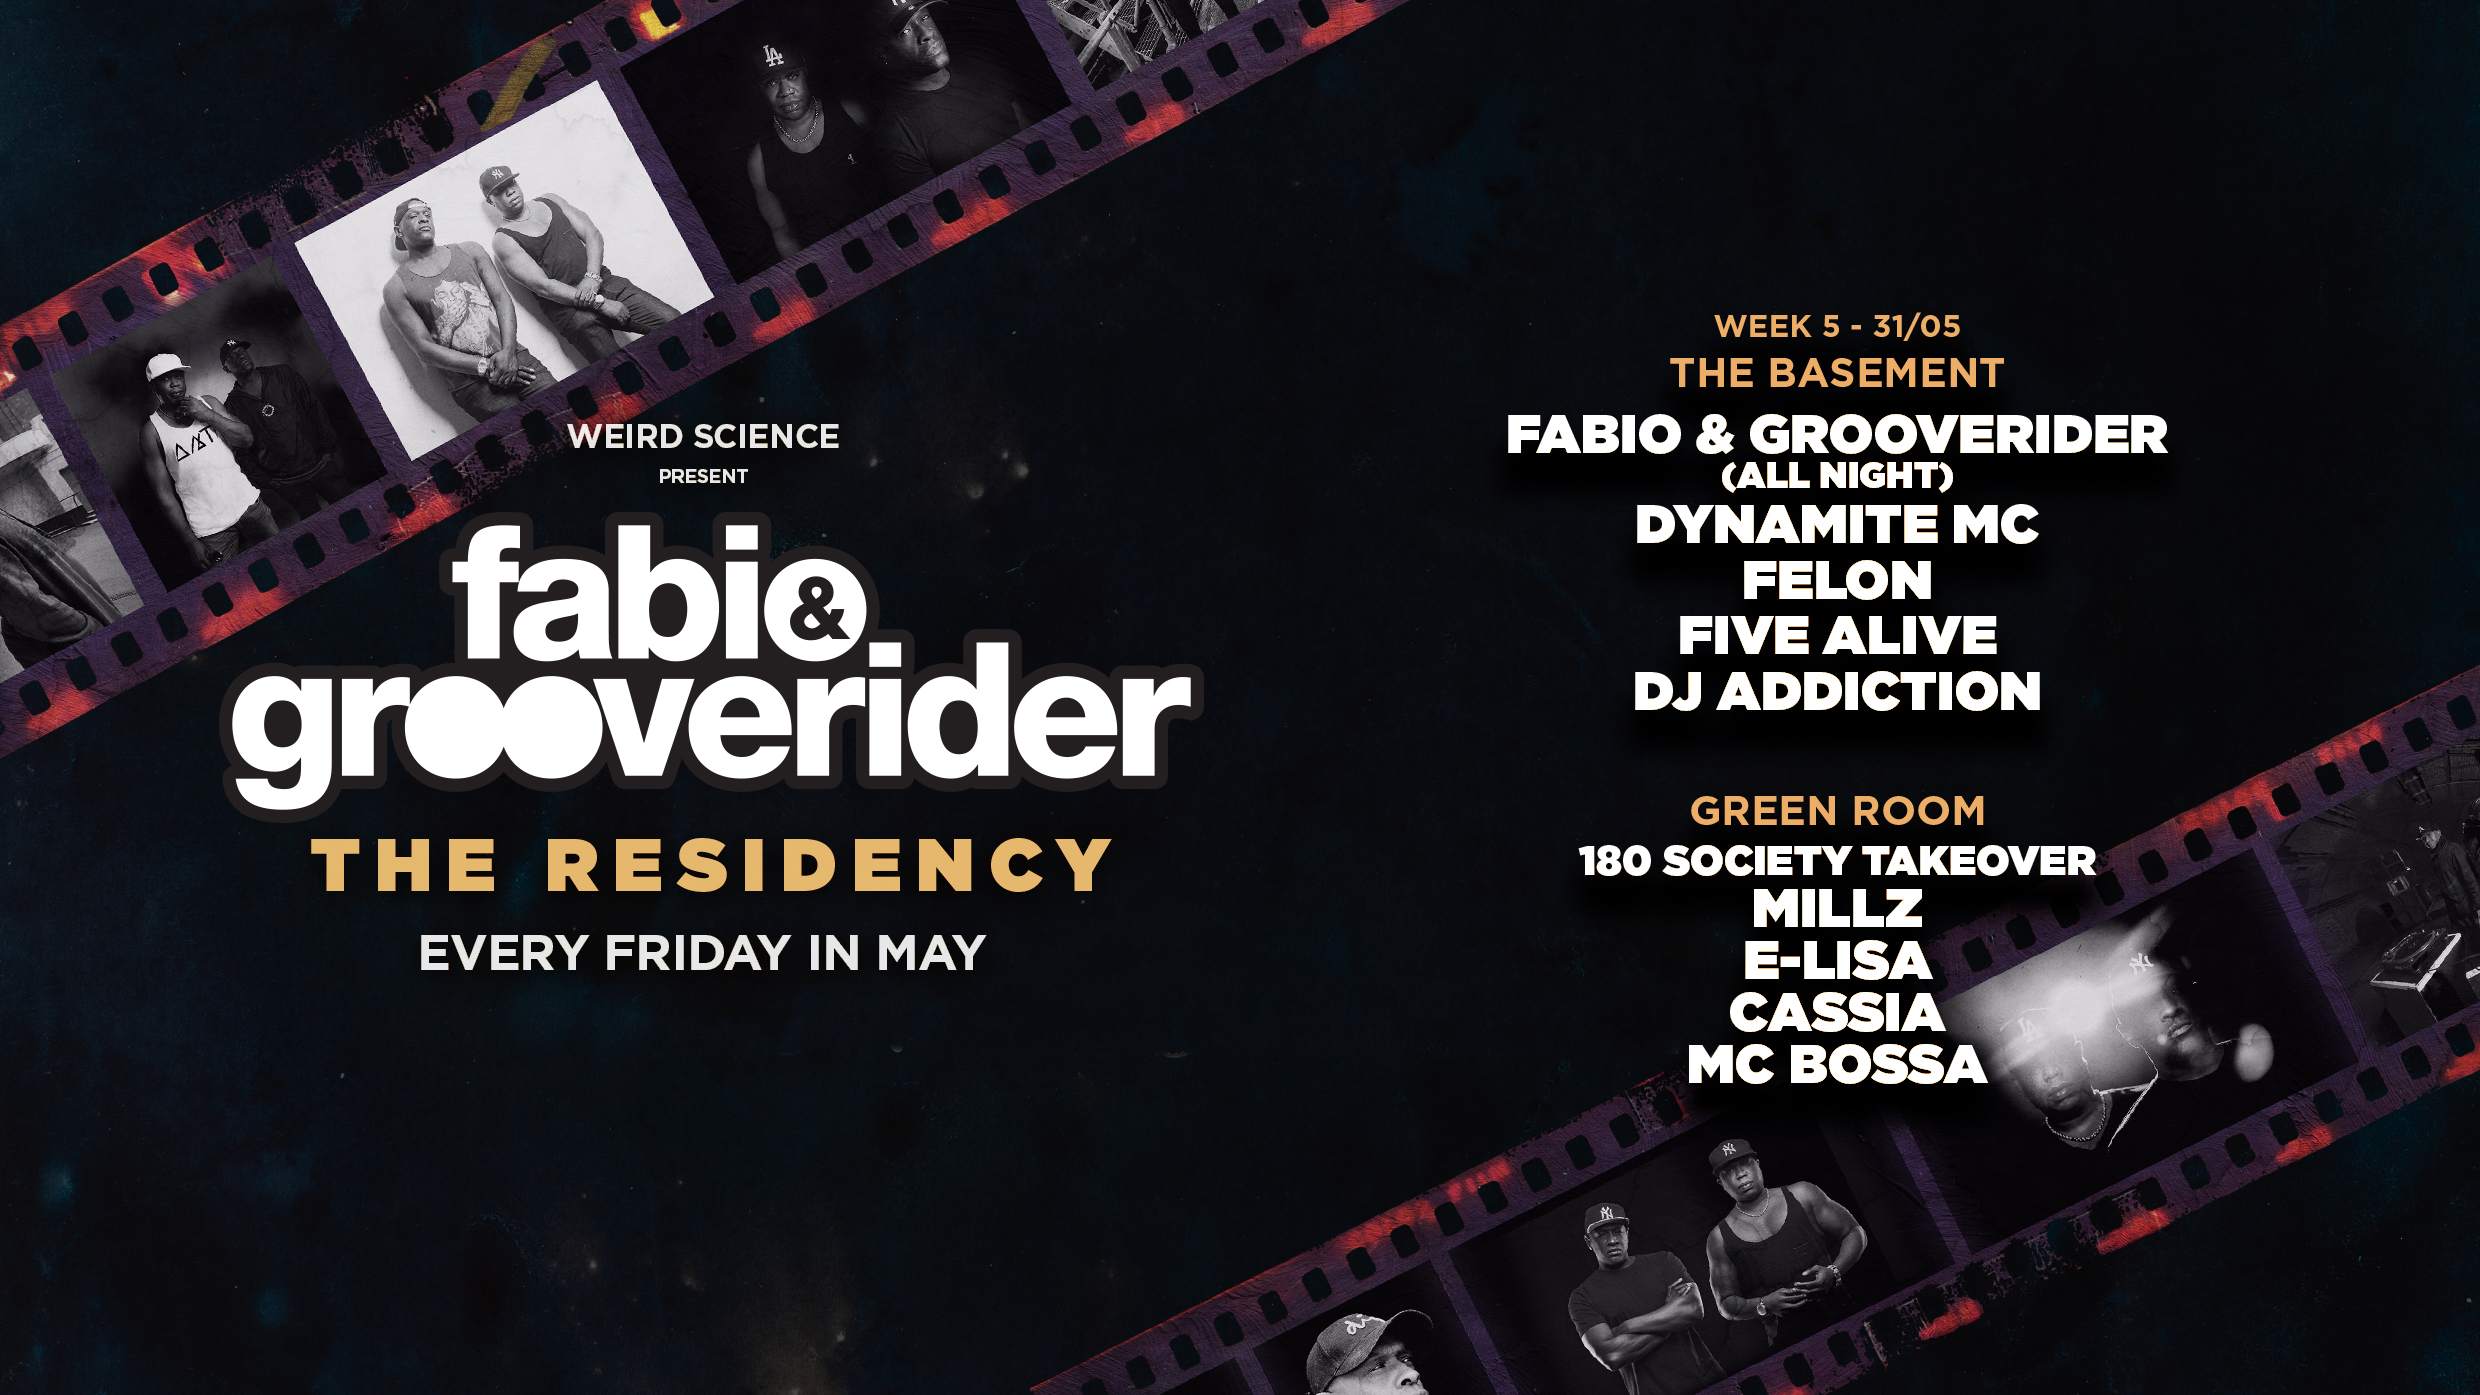 Fabio & Grooverider : The Residency (Week 5) - Página frontal